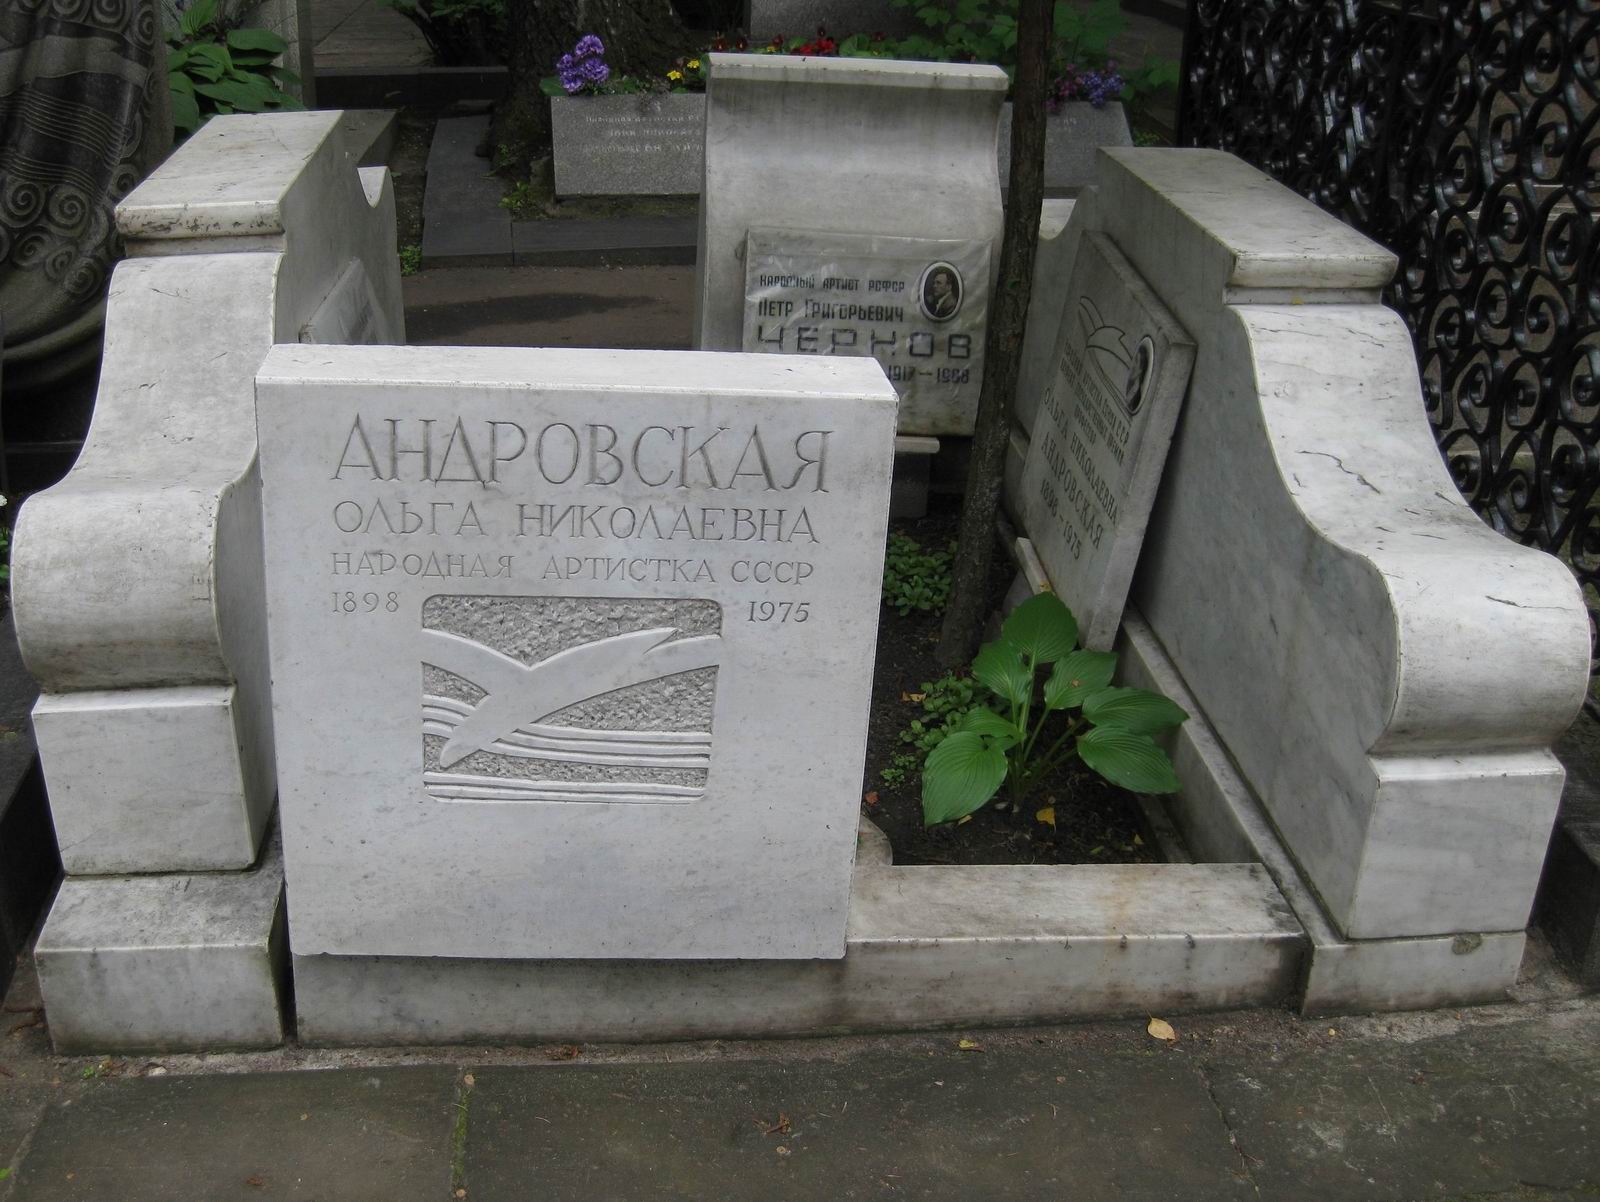 Памятник на могиле Андровской О.Н. (1898-1975), арх. Т.Воскресенская, на Новодевичьем кладбище (2-15-22).